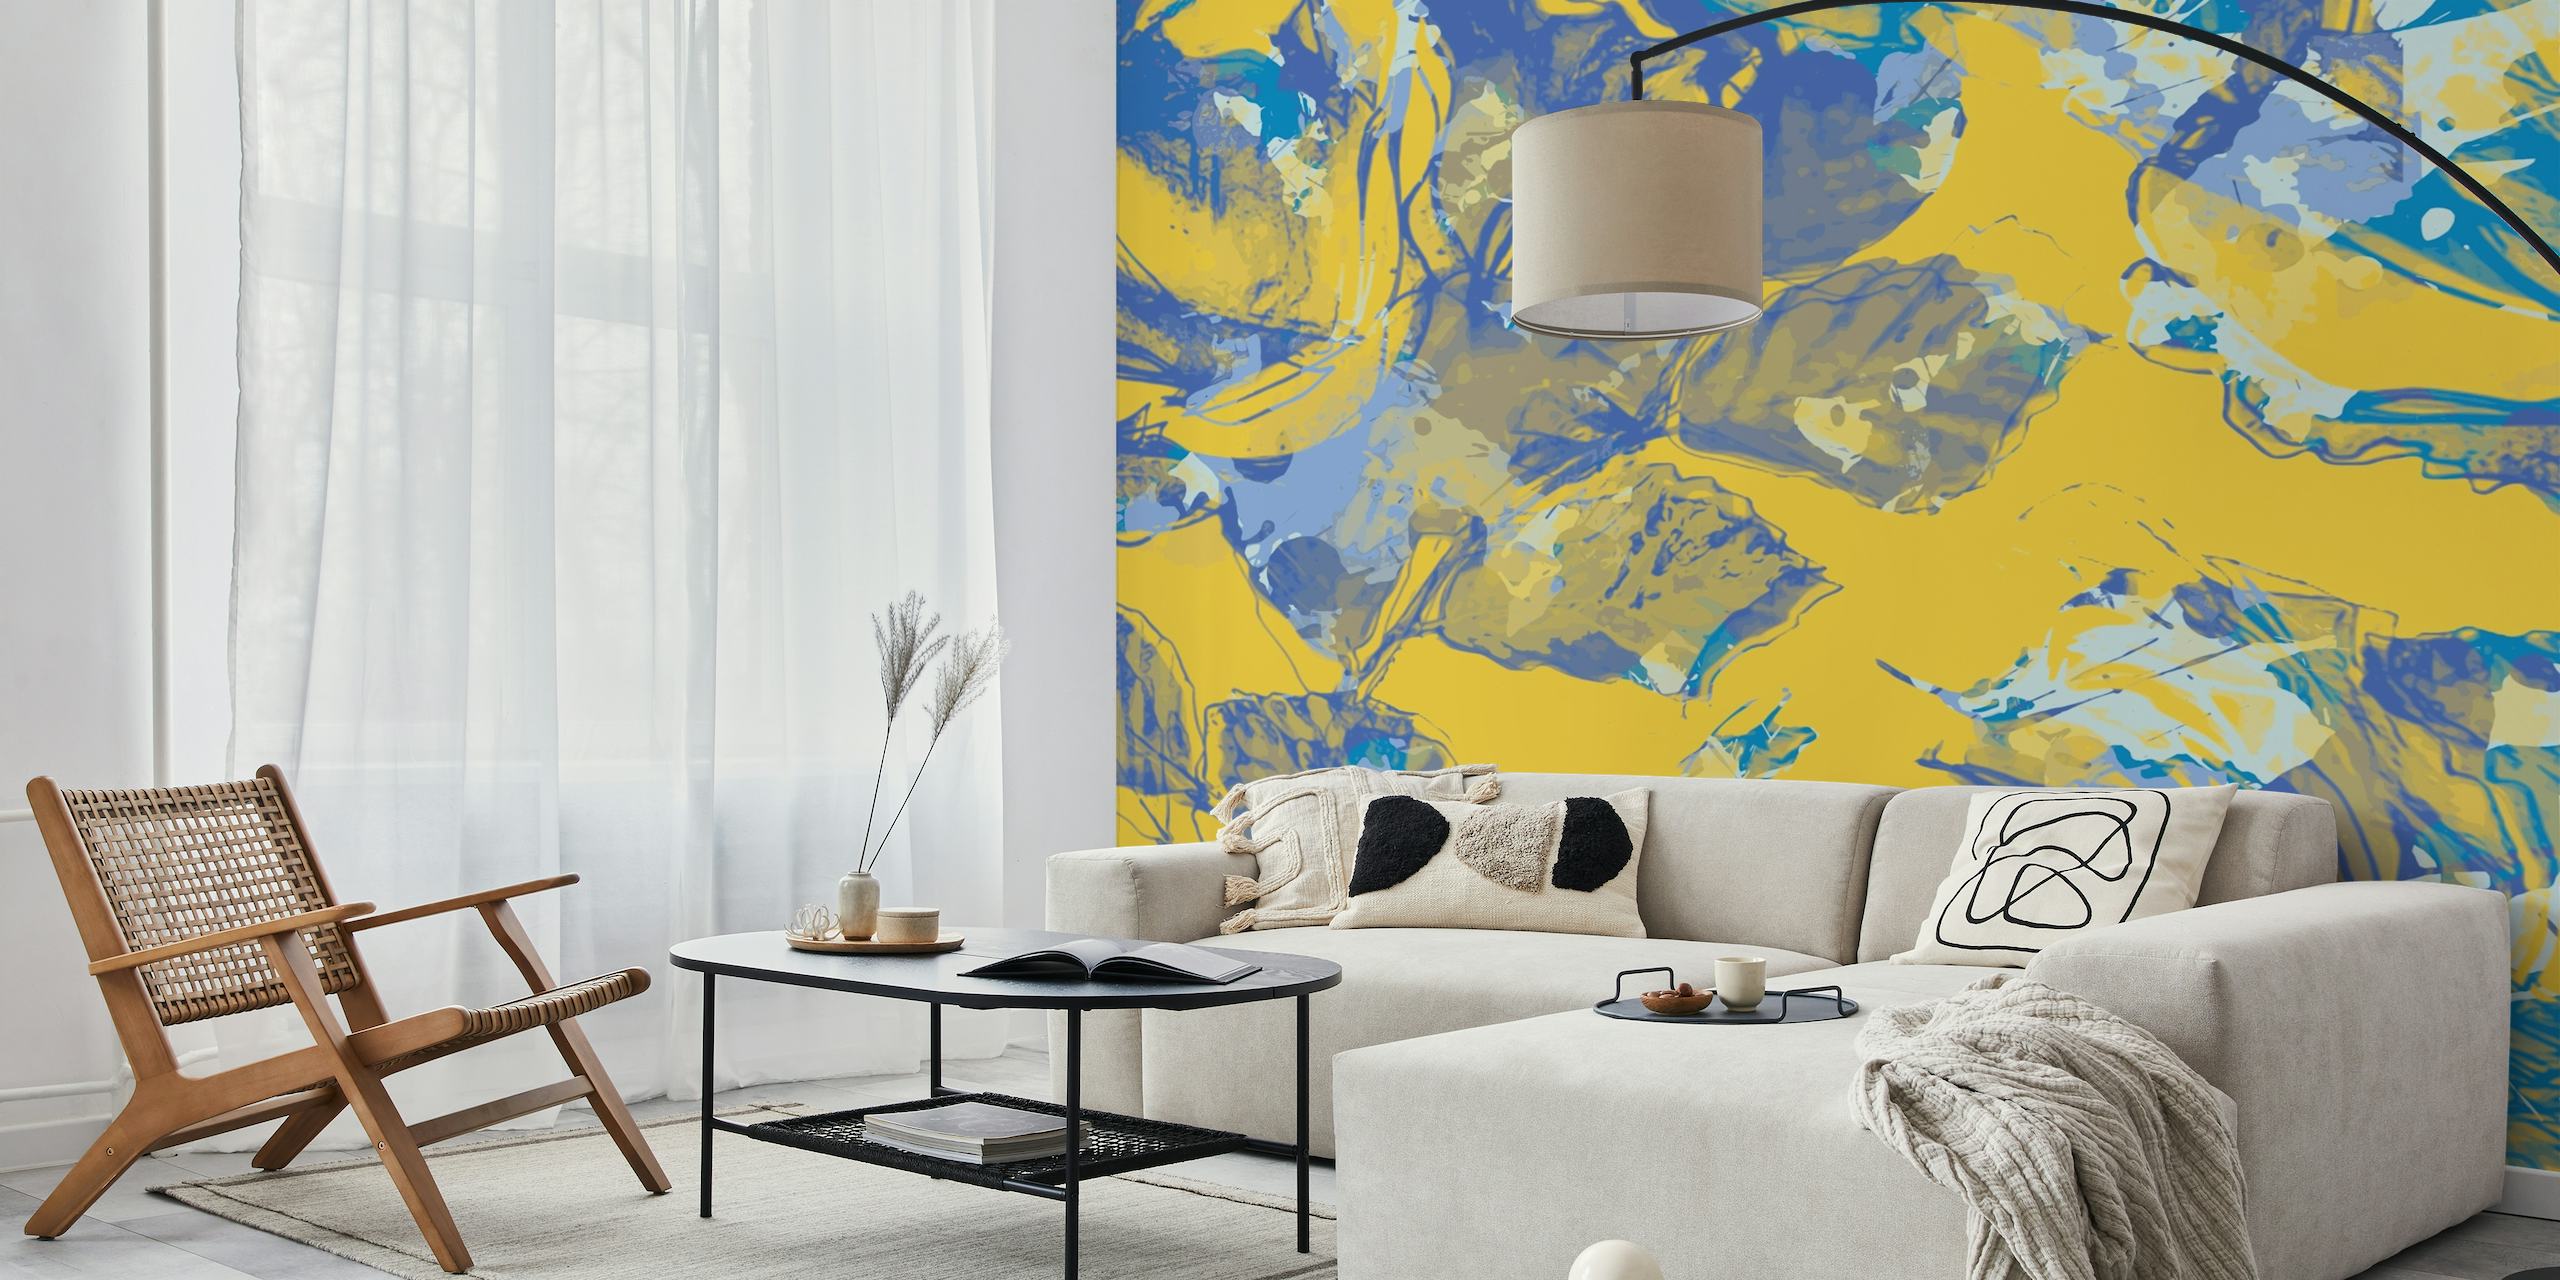 Zářivě žlutá a modrá květinová nástěnná malba pro živou výzdobu s letní tématikou